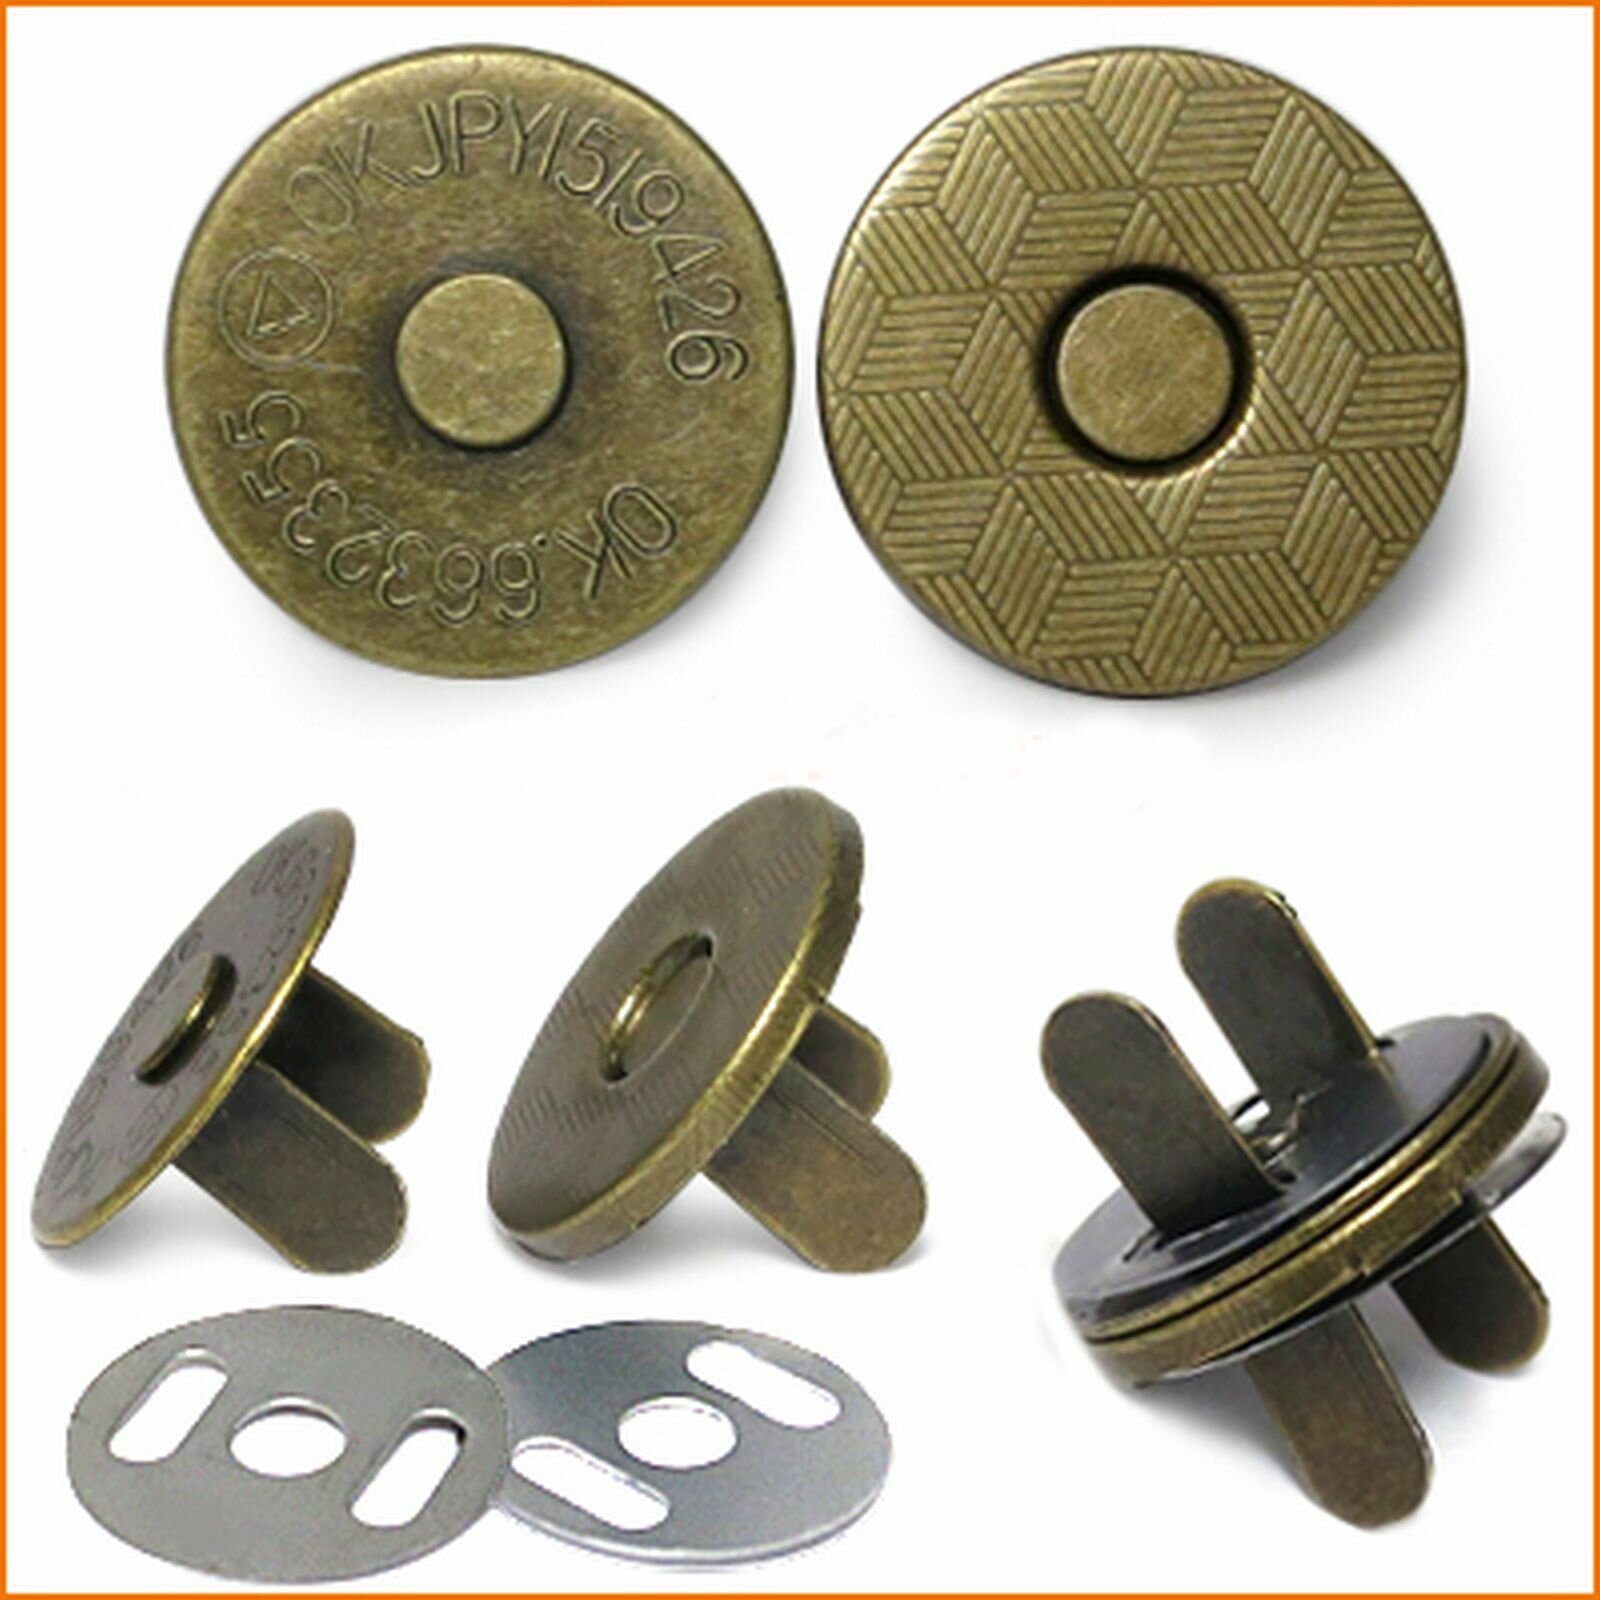 Кнопка магнитная металл (для сумок, кошельков, текстильных вещей и одежды), d 18. цвет бронза,2 штуки.